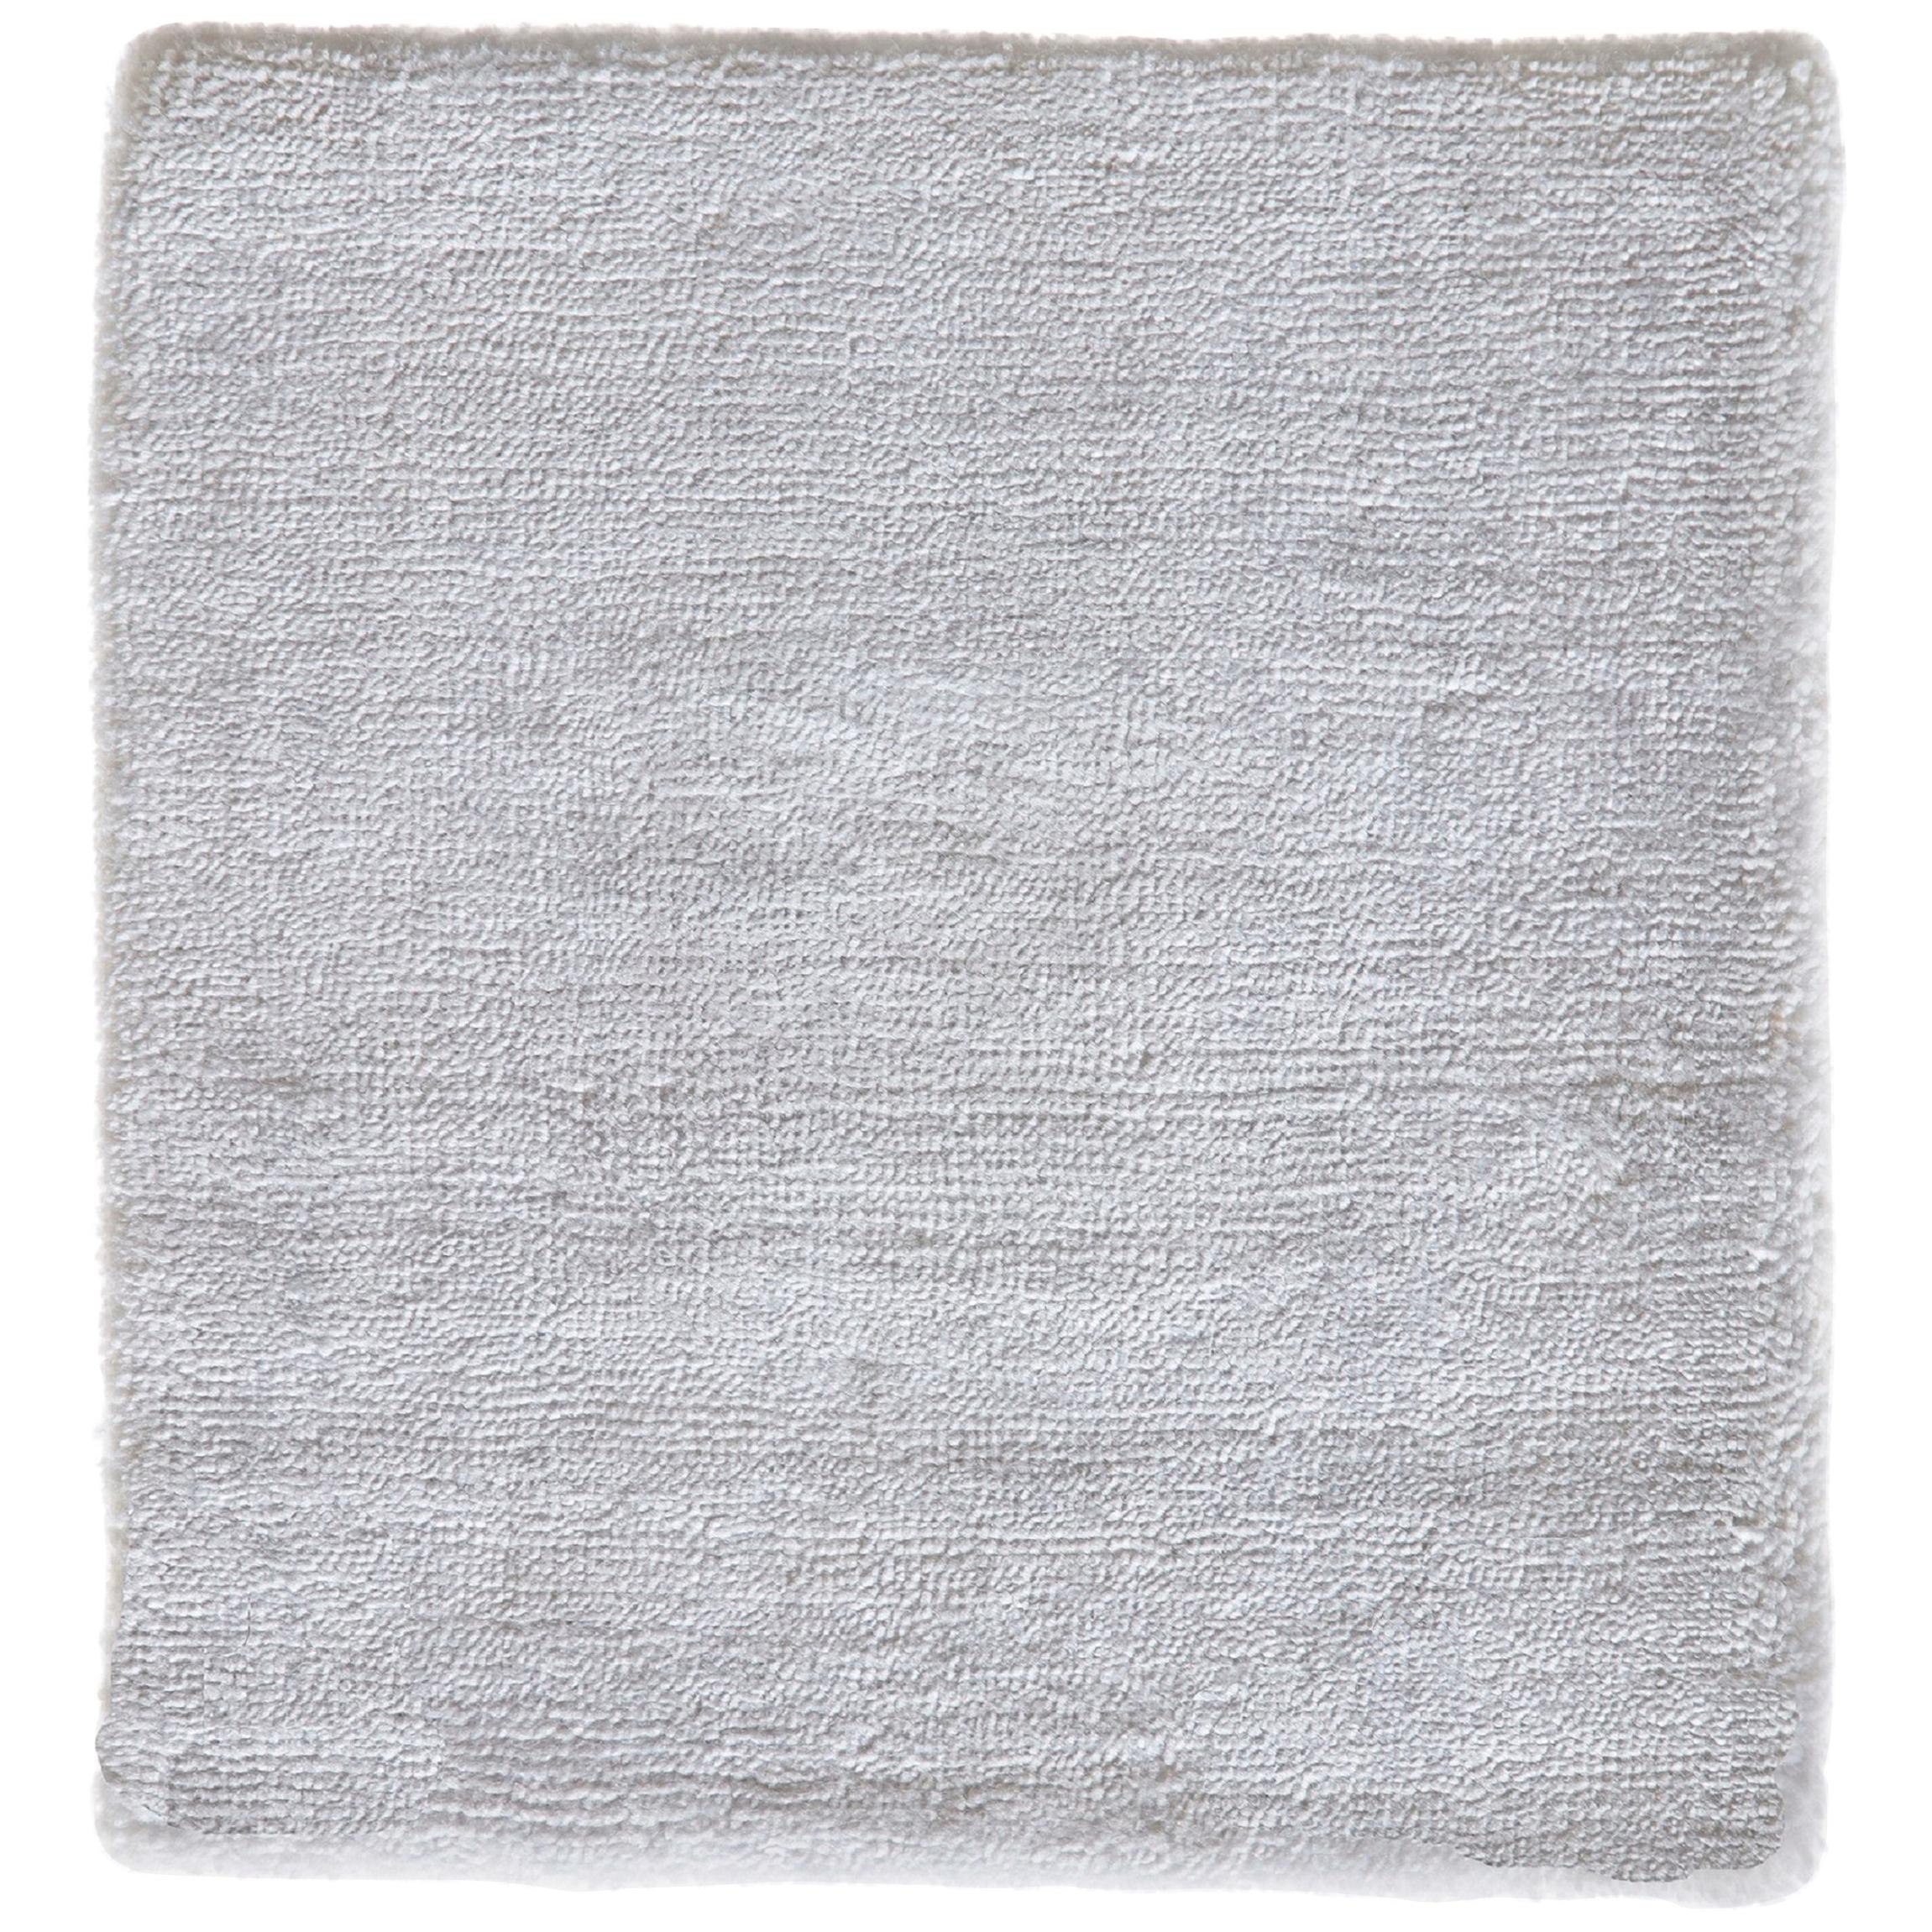 Weißer handgewebter Teppich mit luxuriöser Textur und weichem Glanz und glatter Oberfläche aus Bambusseide, handgewebt